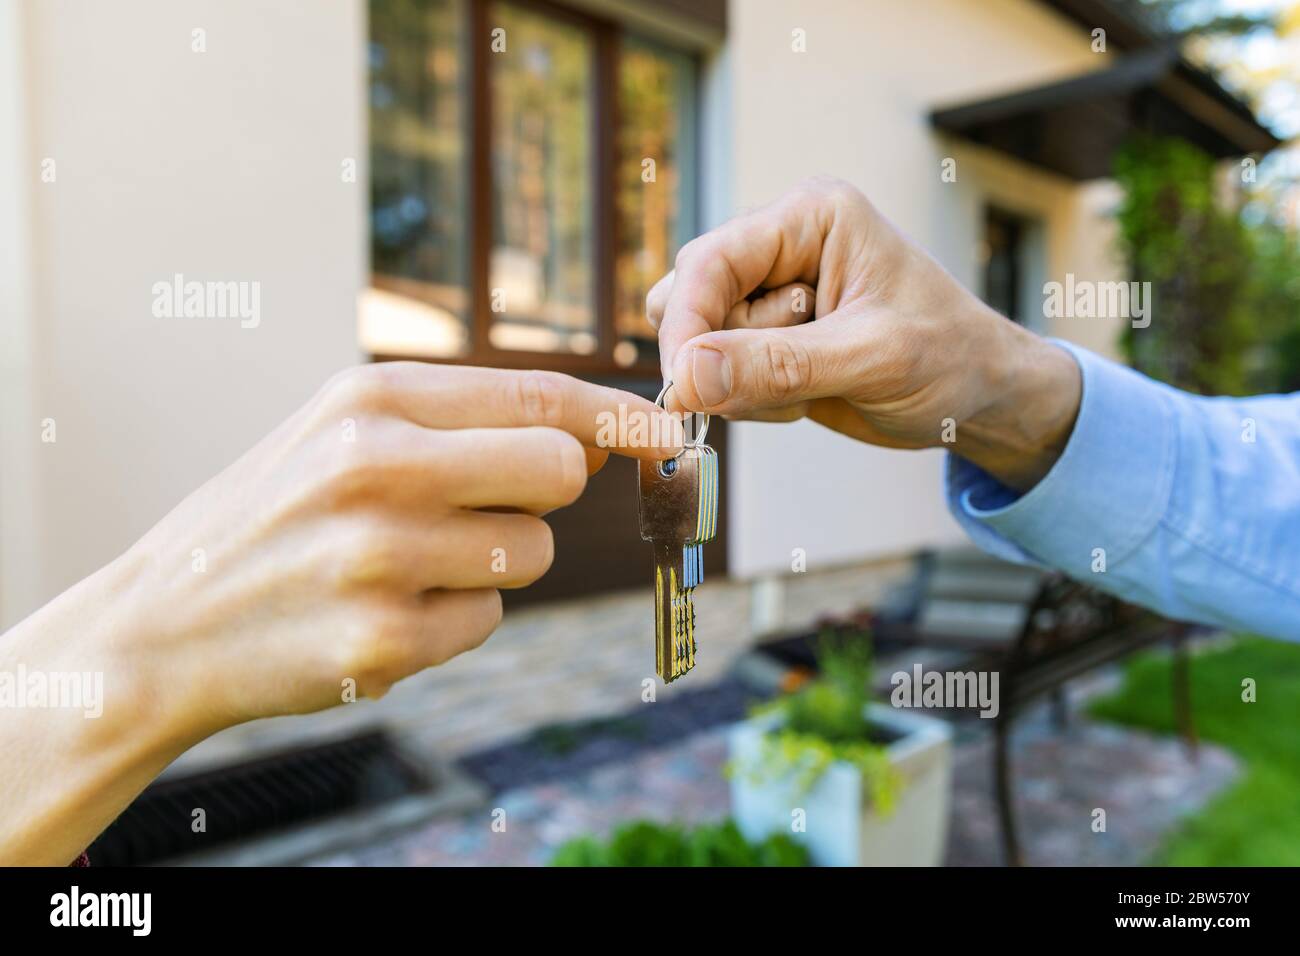 settore immobiliare - agente immobiliare che dà nuove chiavi di casa al cliente Foto Stock